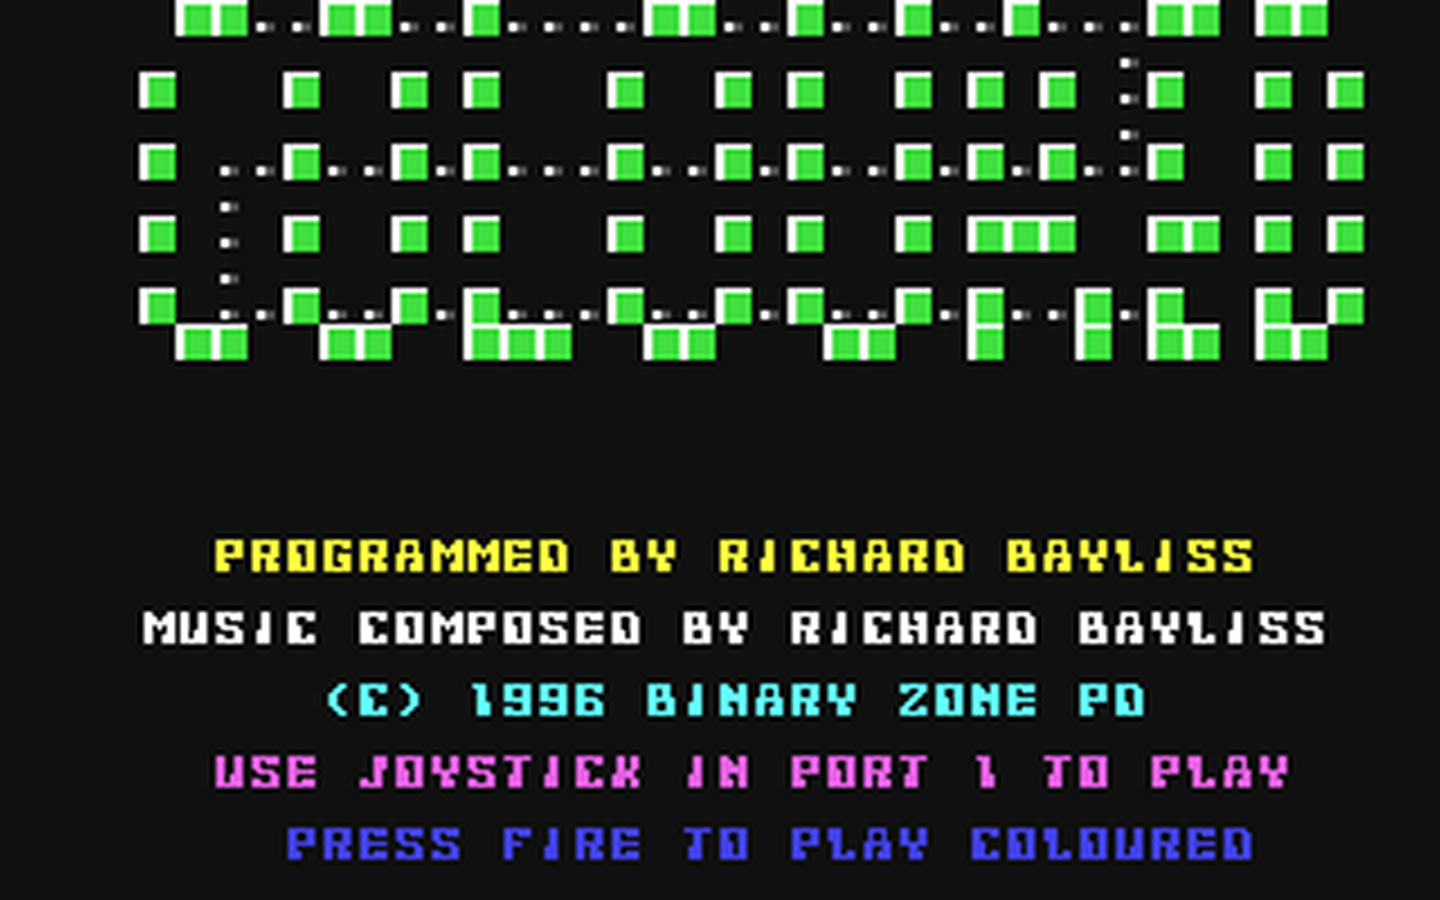 C64 GameBase Coloured_II Binary_Zone_PD 1996